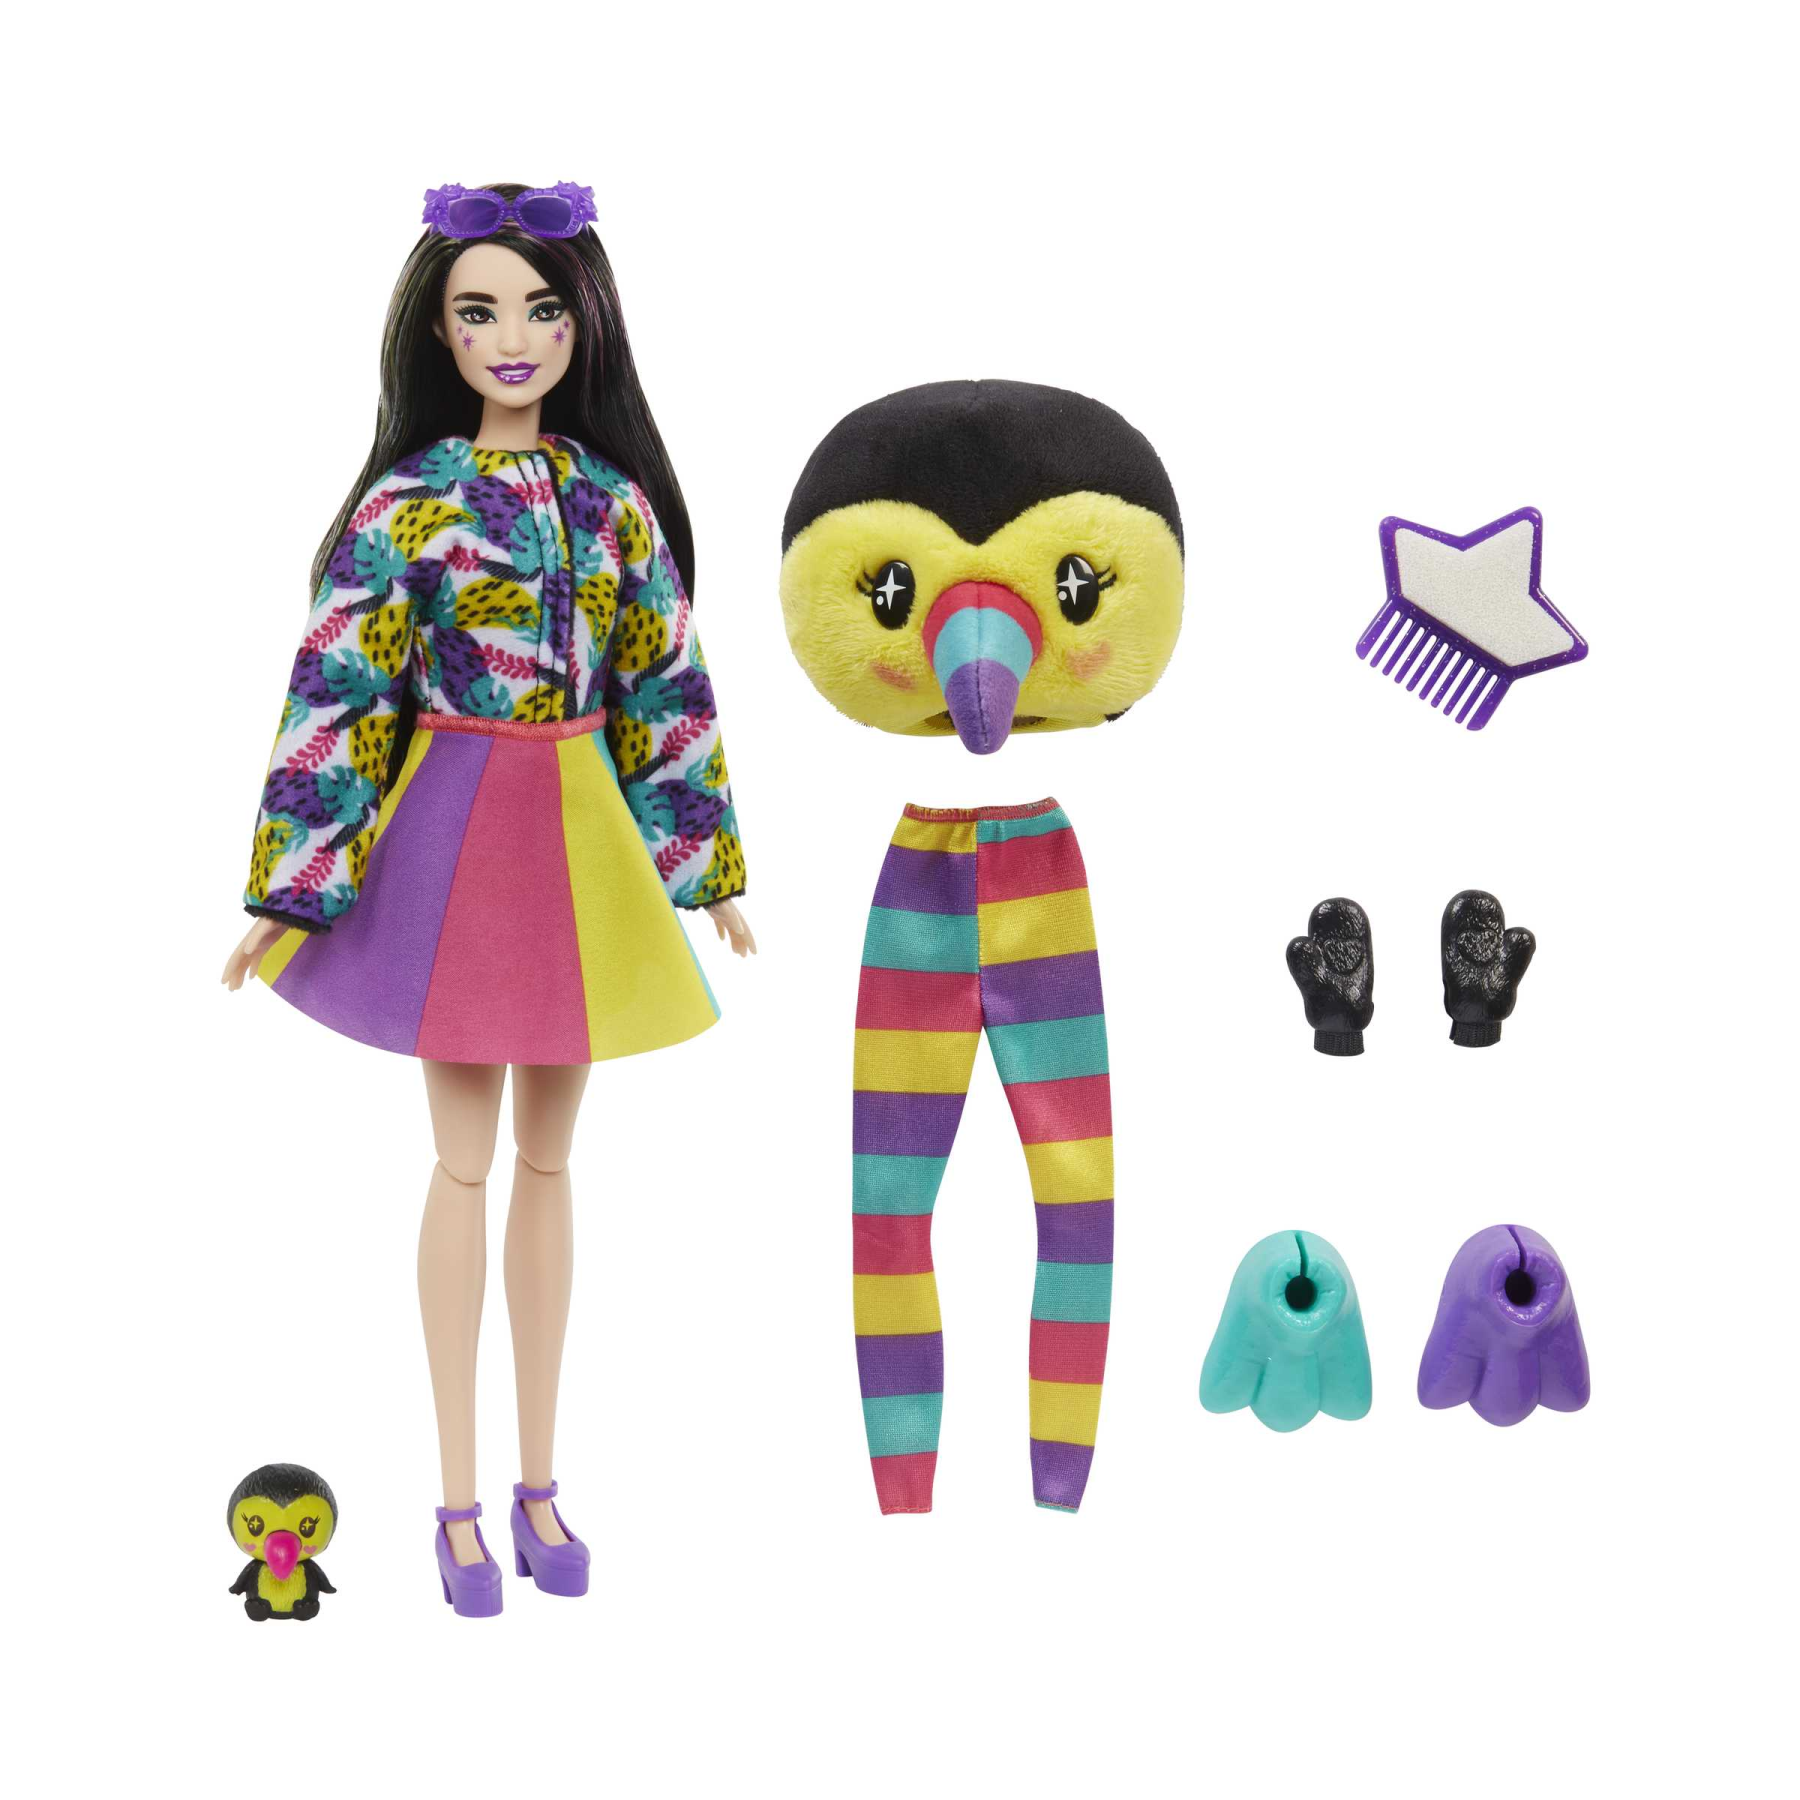 Barbie - barbie cutie reveal tucano, serie amici della giungla, bambola con costume da tucano di peluche e 10 sorprese con tecnologia cambia colore, giocattolo per bambini, 3+ anni, hkr00 - Barbie